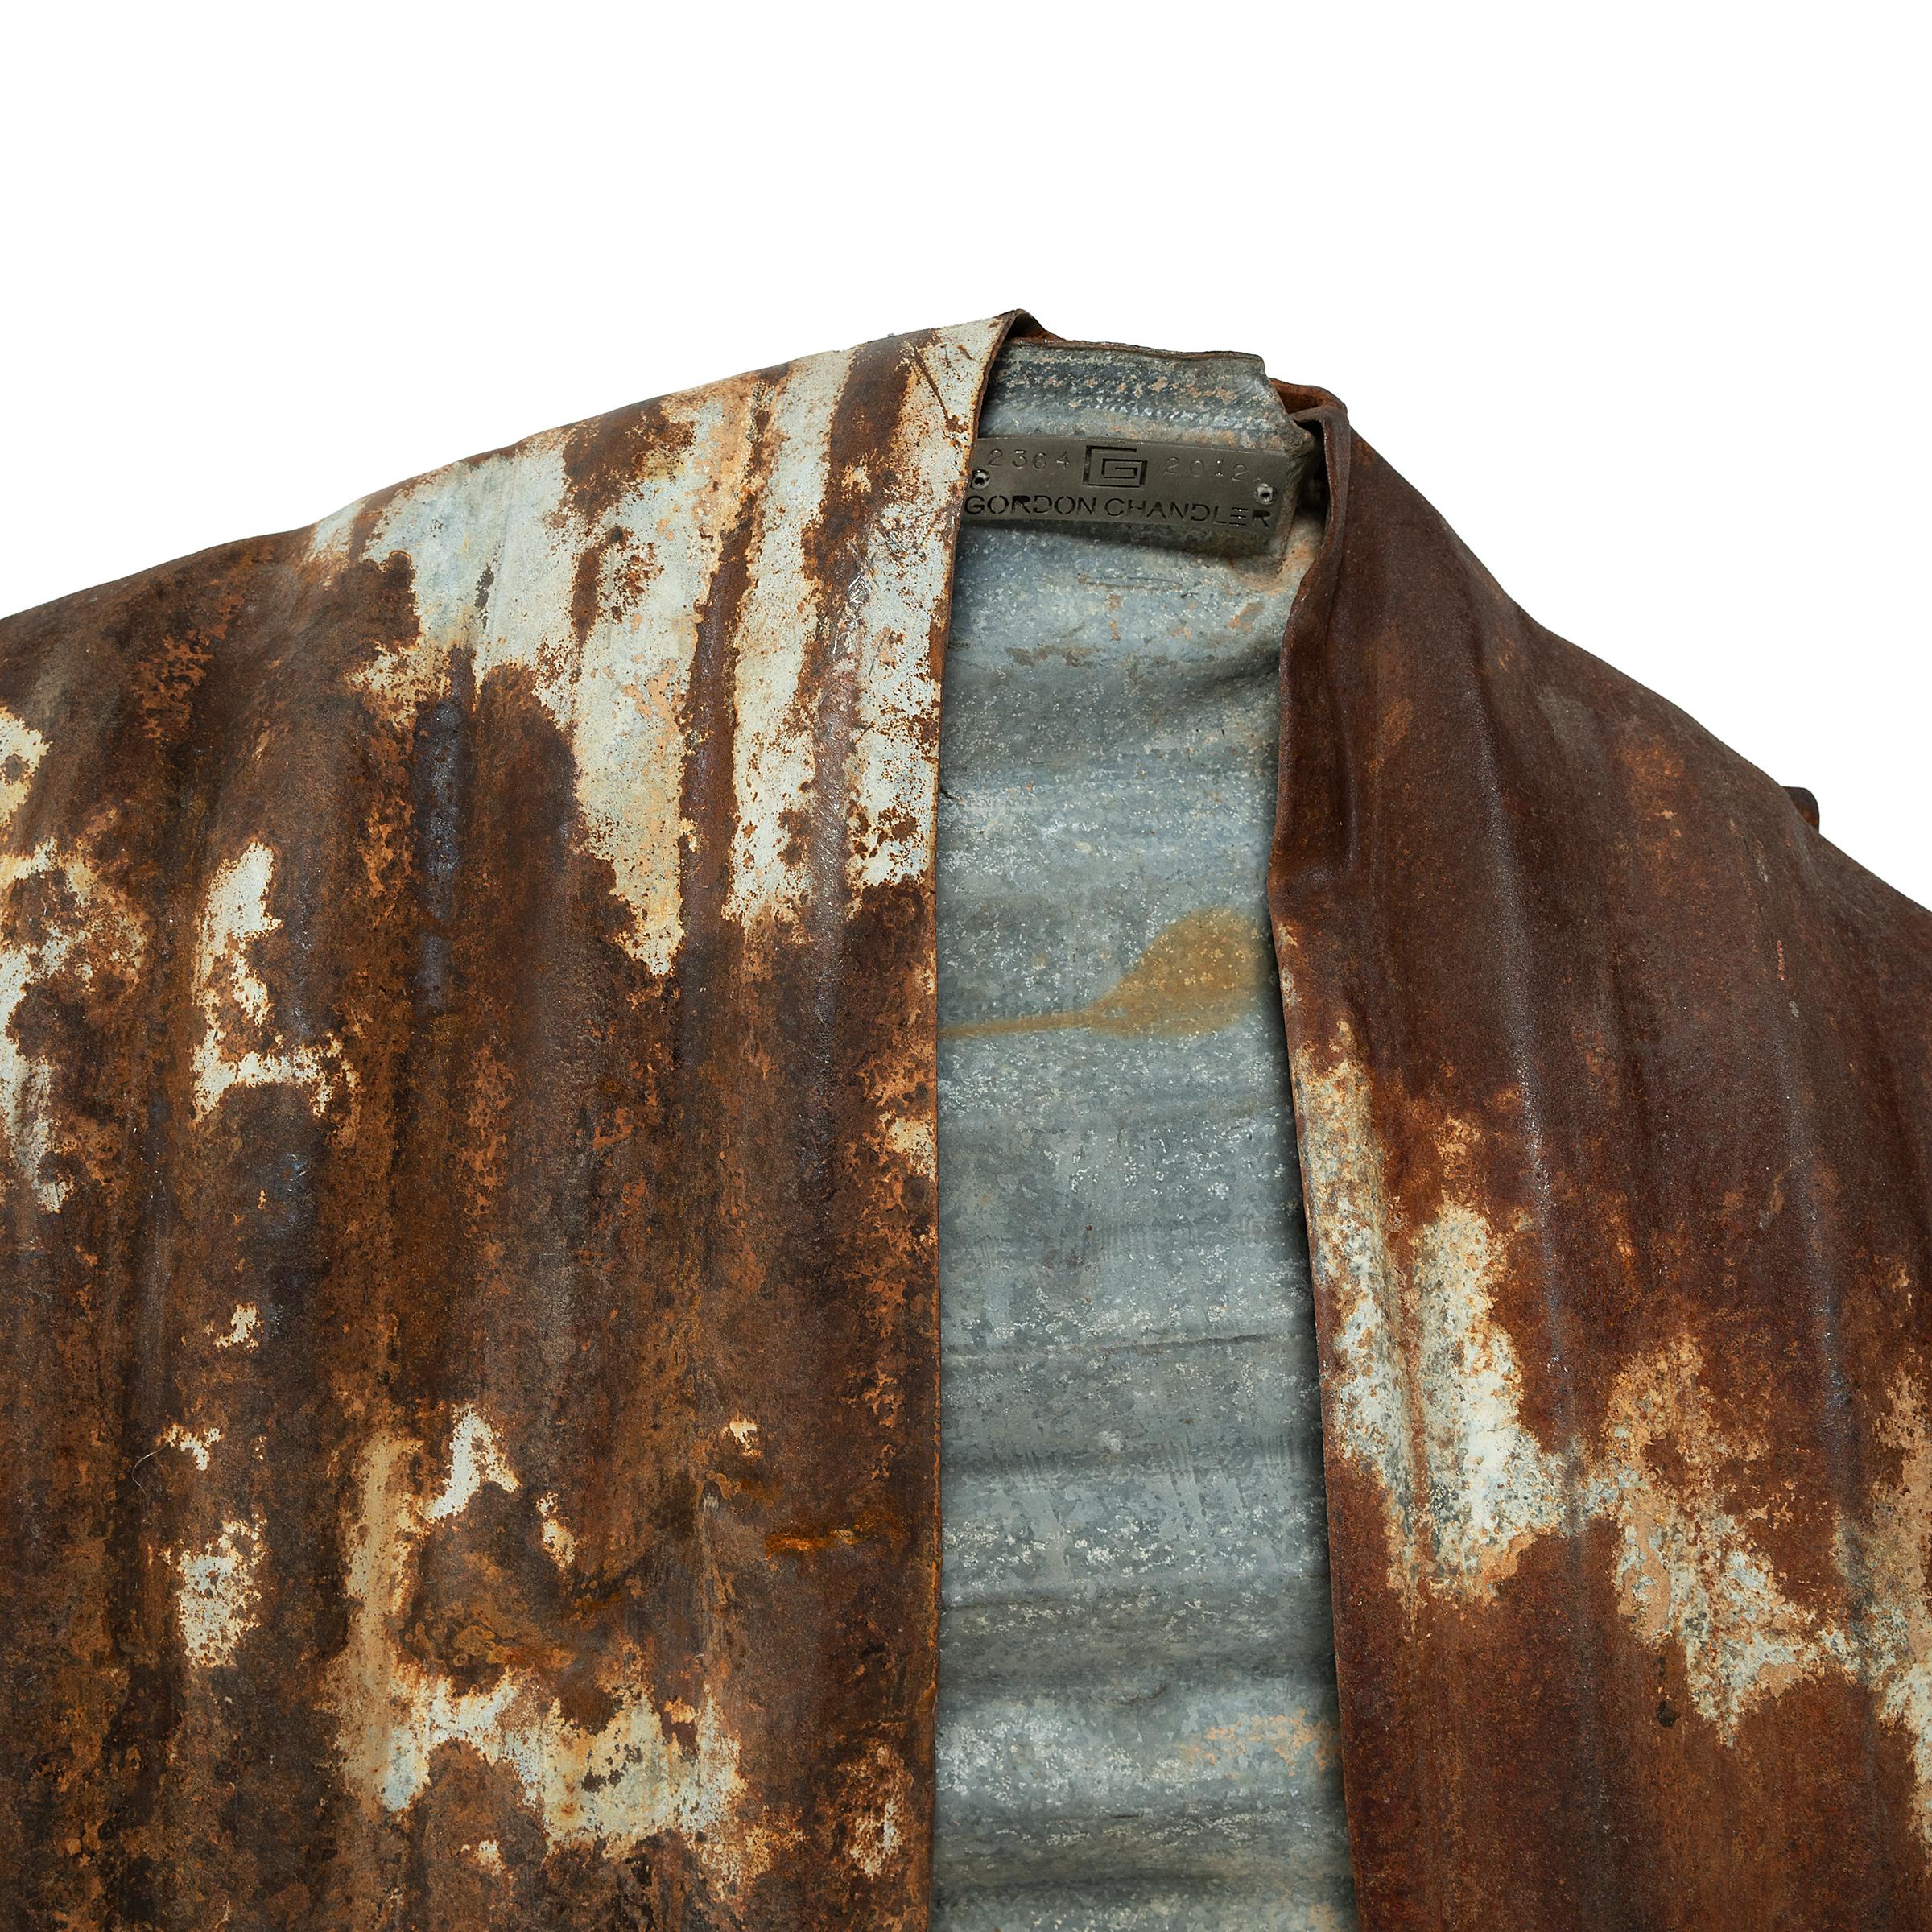 Après avoir découvert un tambour en acier usé par le temps qui avait été déformé pour ressembler à la manche d'un vêtement, l'artiste Gordon Chandler a eu l'idée de se lancer dans une série de kimonos sculptés à partir de déchets métalliques